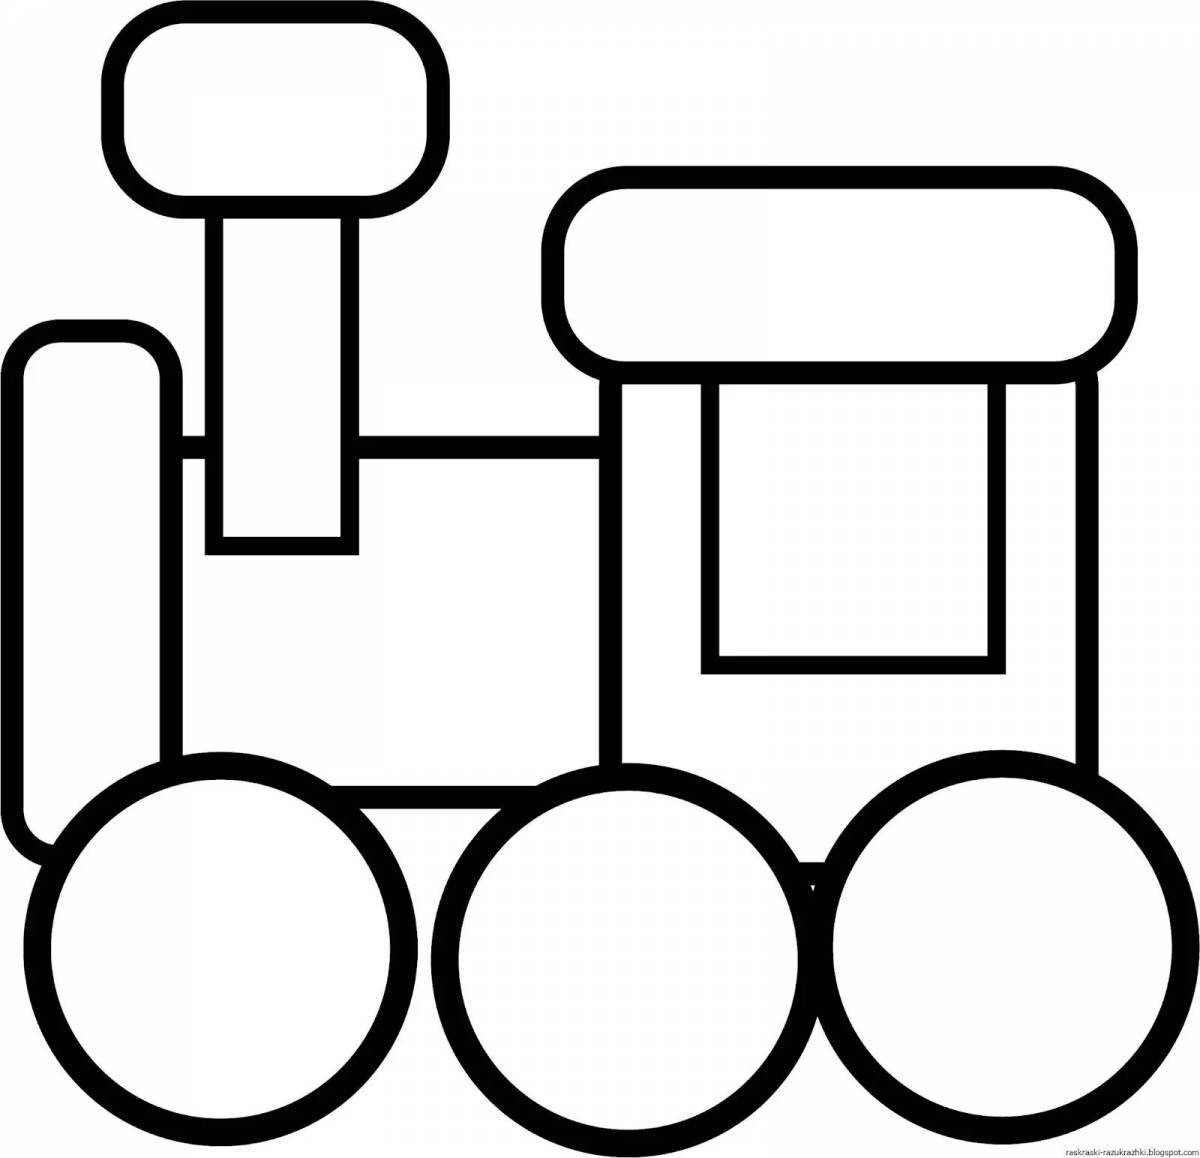 Увлекательный паровозик без колес для детей 2-3 лет